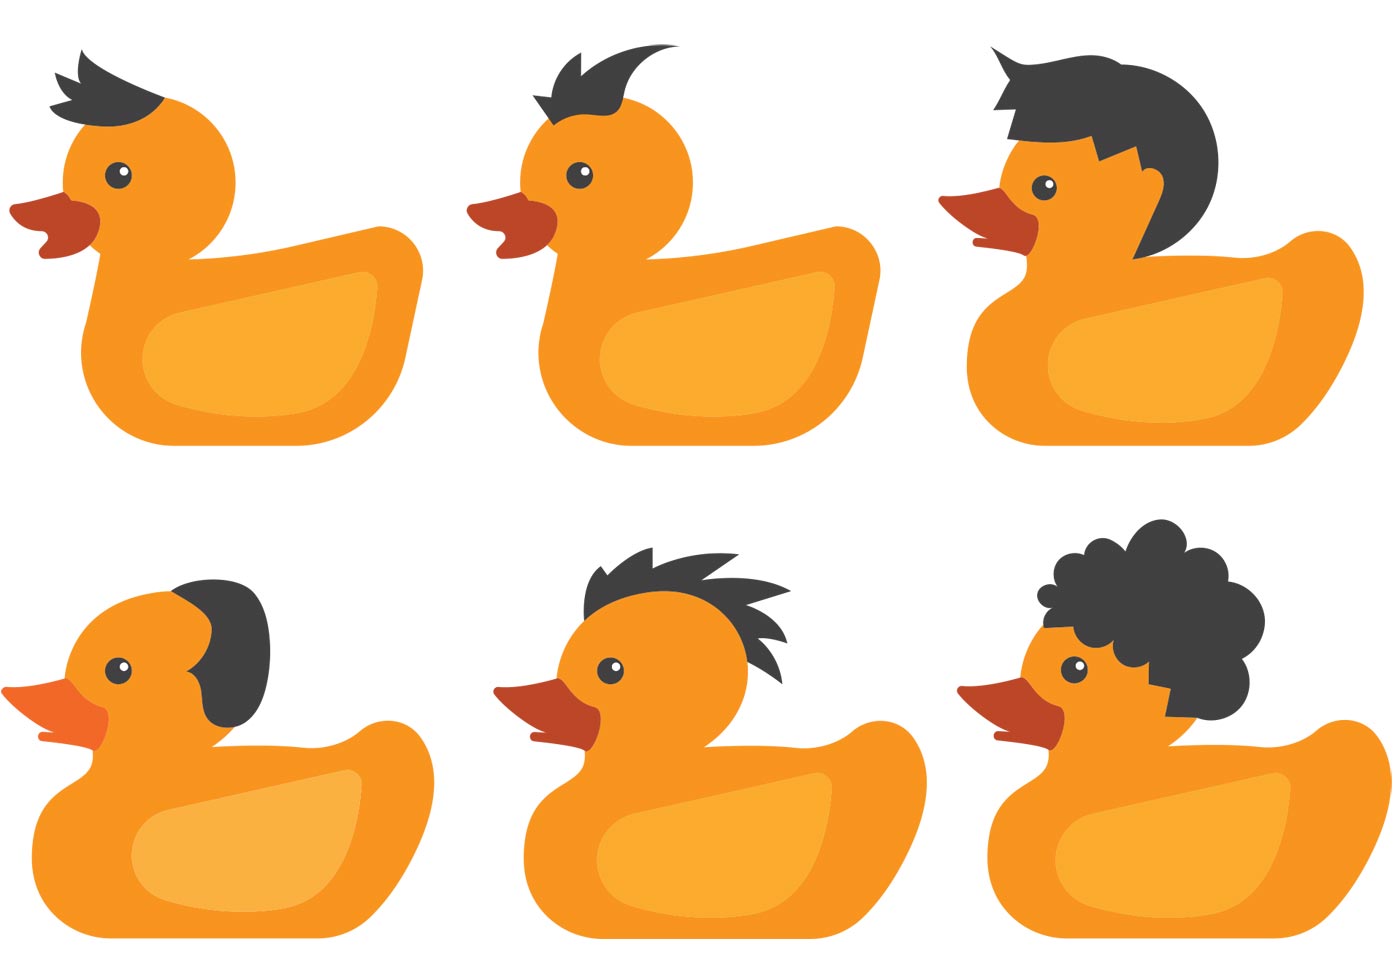 Duck Free Vector Art - (2216 Free Downloads)